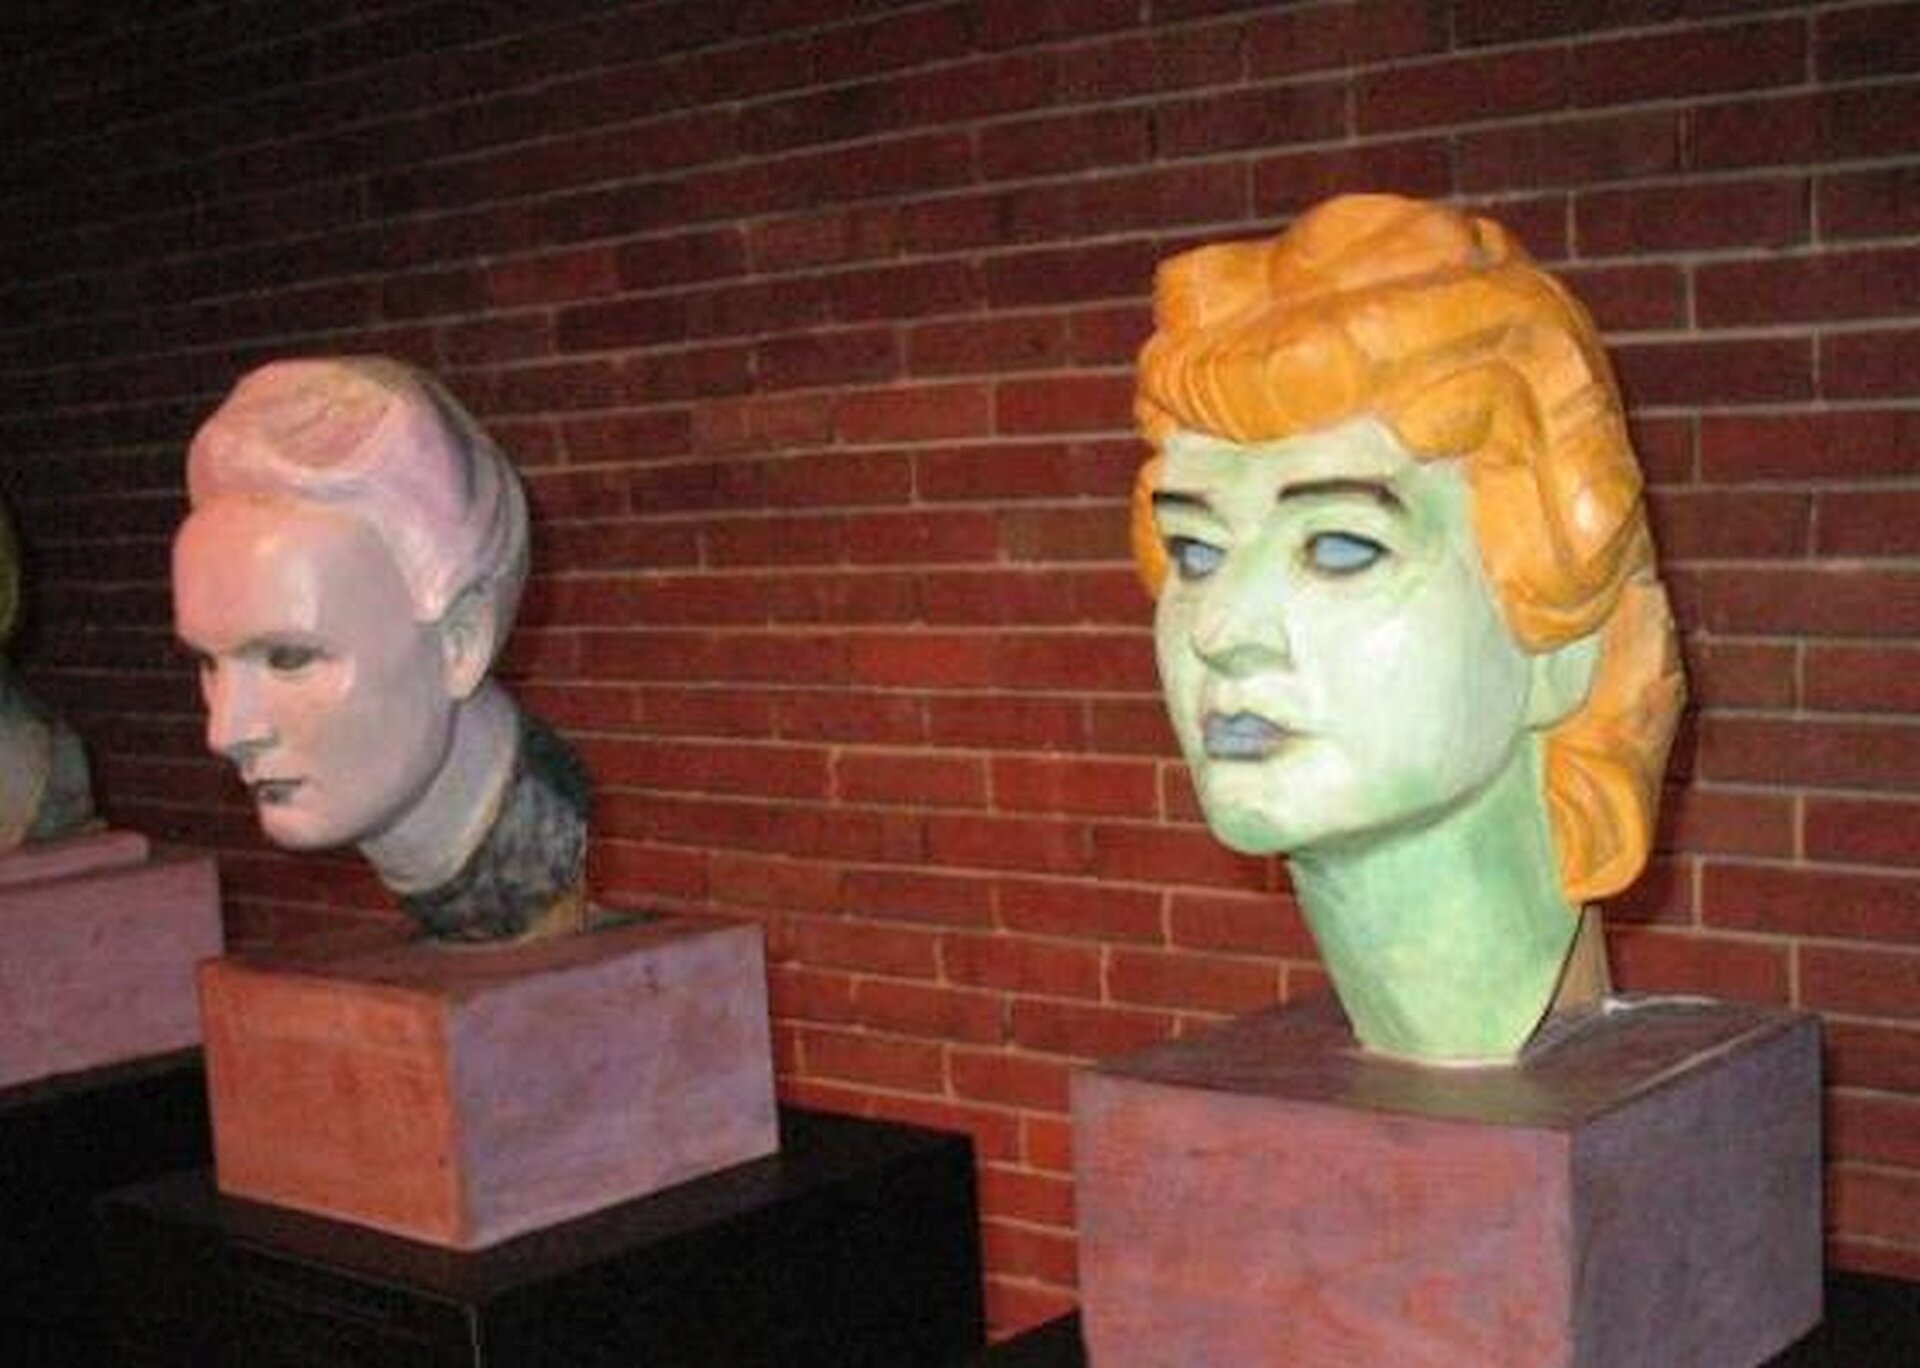 Ilustracja przedstawia dwie rzeźby Helena Modrzejewska, z drugiego cyklu Głowy wawelskie, Xawery Dunikowski, Muzeum Narodowe w Warszawie. Na ilustracji widać dwie rzeźby głowy. Na pierwszym planie widać głowę w kolorze lekko zielonym z pomarańczowymi włosami, ułożonymi w fale. Oczy są szeroko otwarte, wydatnie zarysowany nos i usta. Druga rzeźba to głowa starszej kobiety z siwymi włosami upiętymi w górę. rzeźby ustawione są na tel muru z czerwonej cegły.